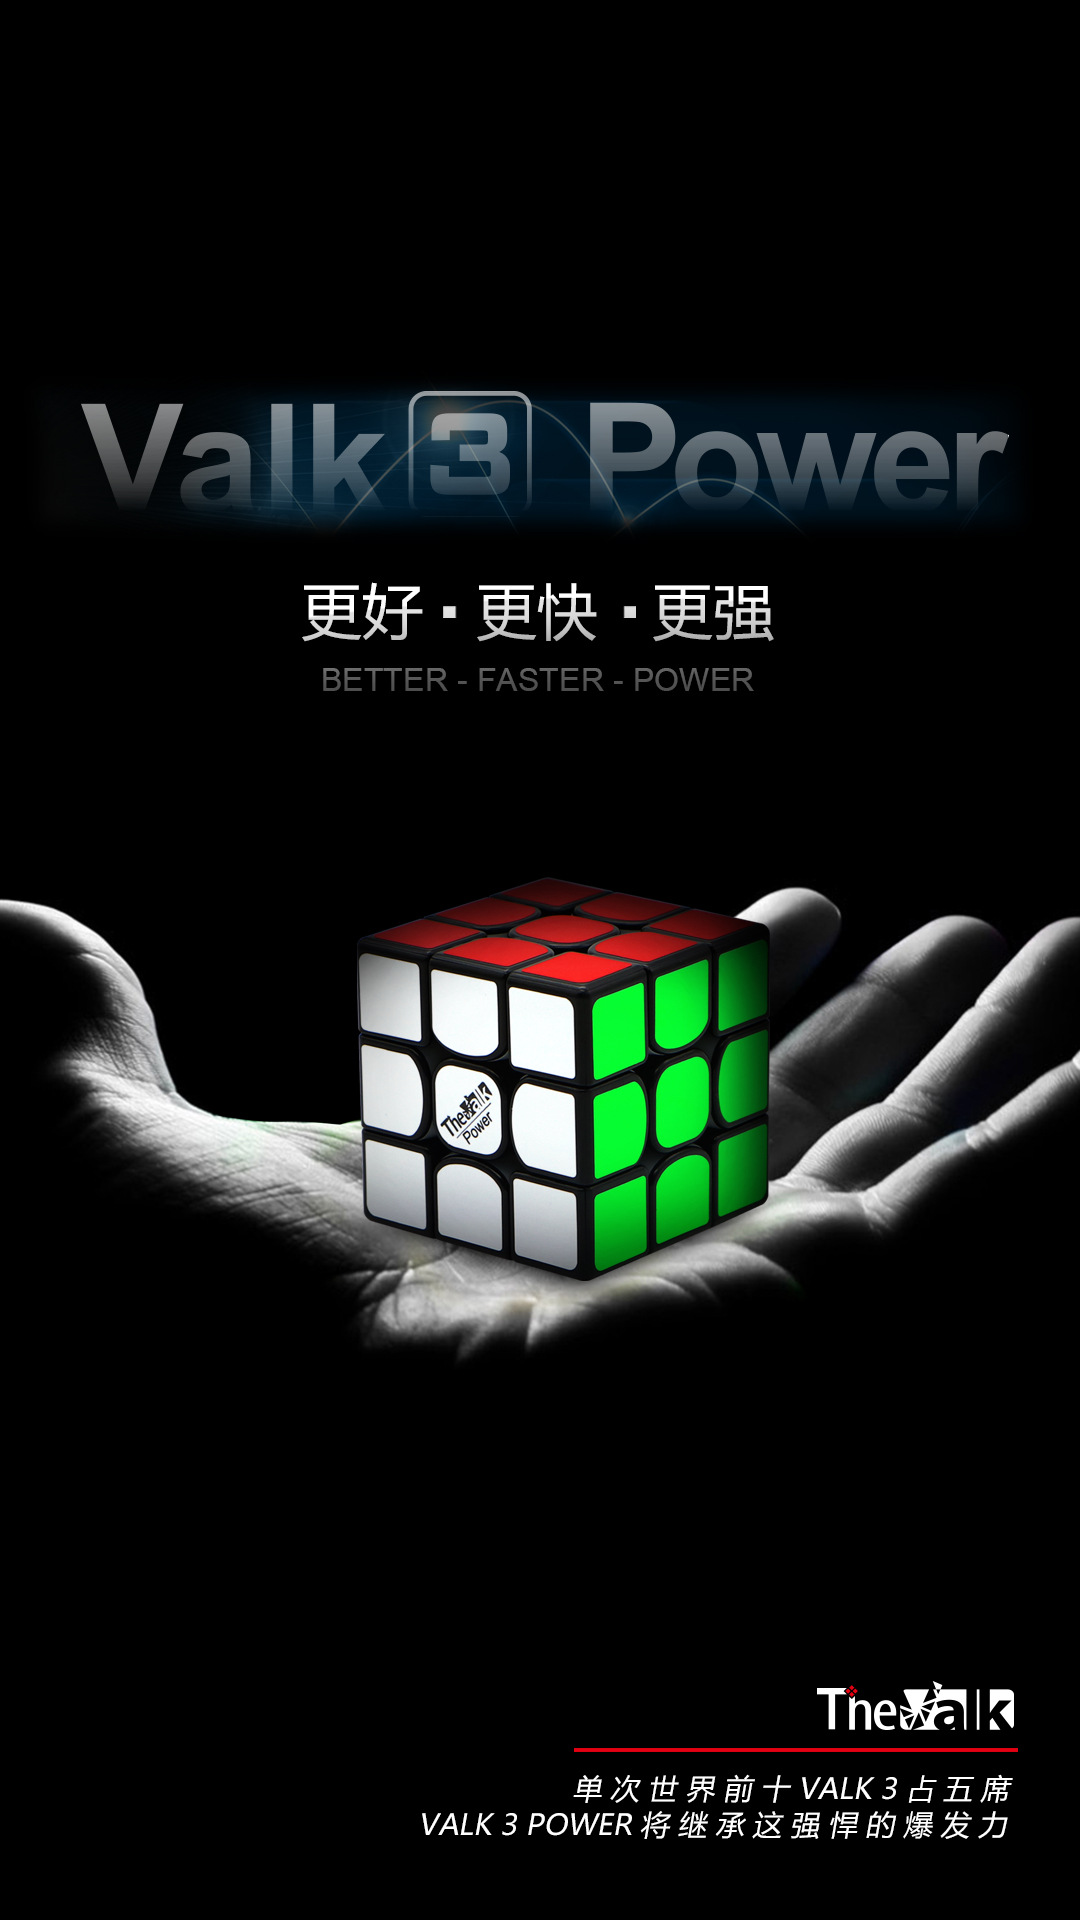 Valk3麦神三阶魔方升级版加磁力行业竞速顺滑益智玩具示例图1